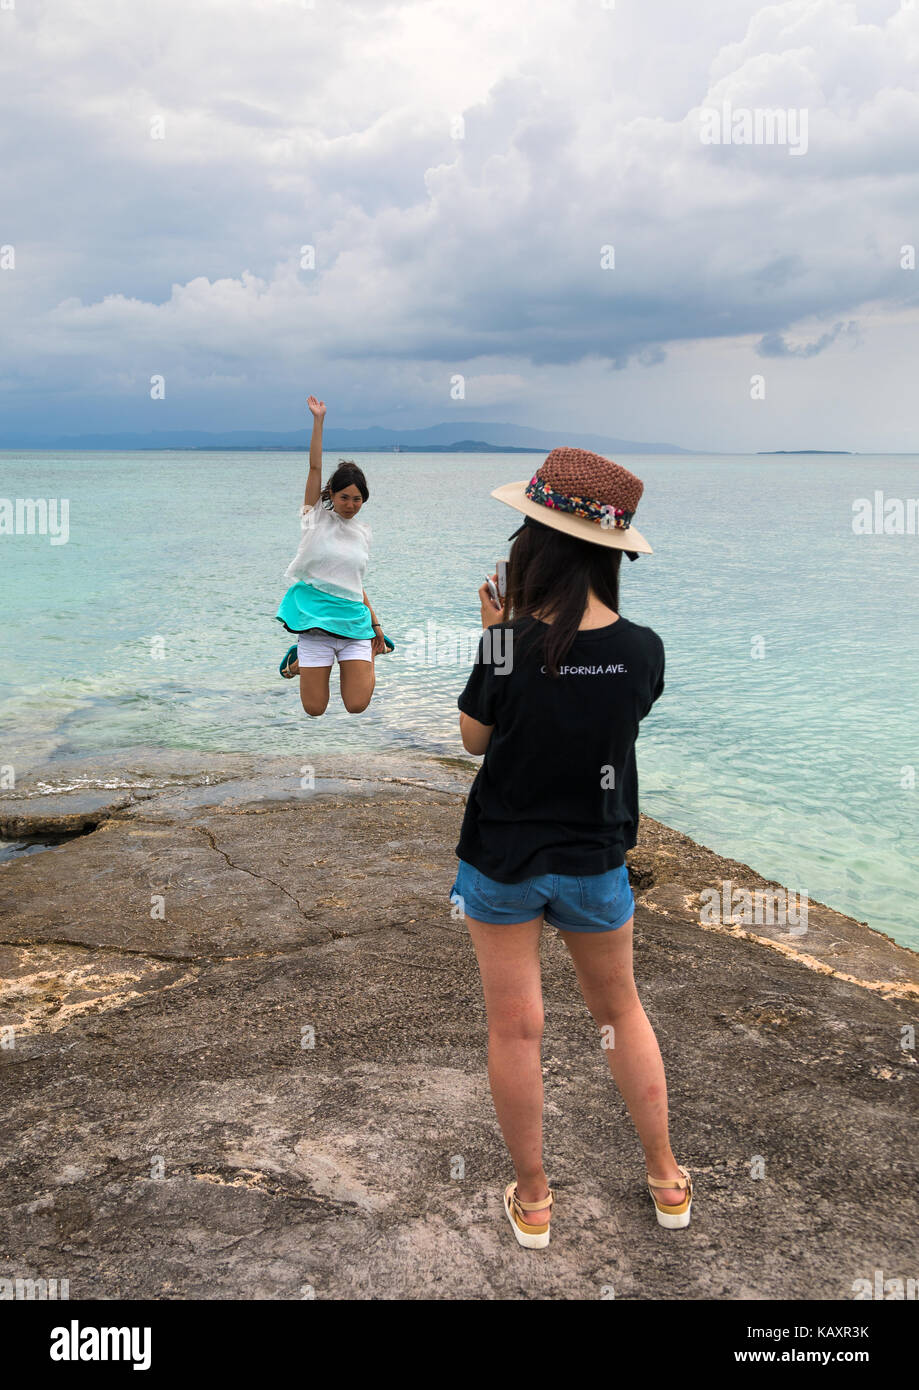 Turista giapponese salto per una foto sul molo di Nishi, isole yaeyama, Isola di Taketomi, Giappone Foto Stock